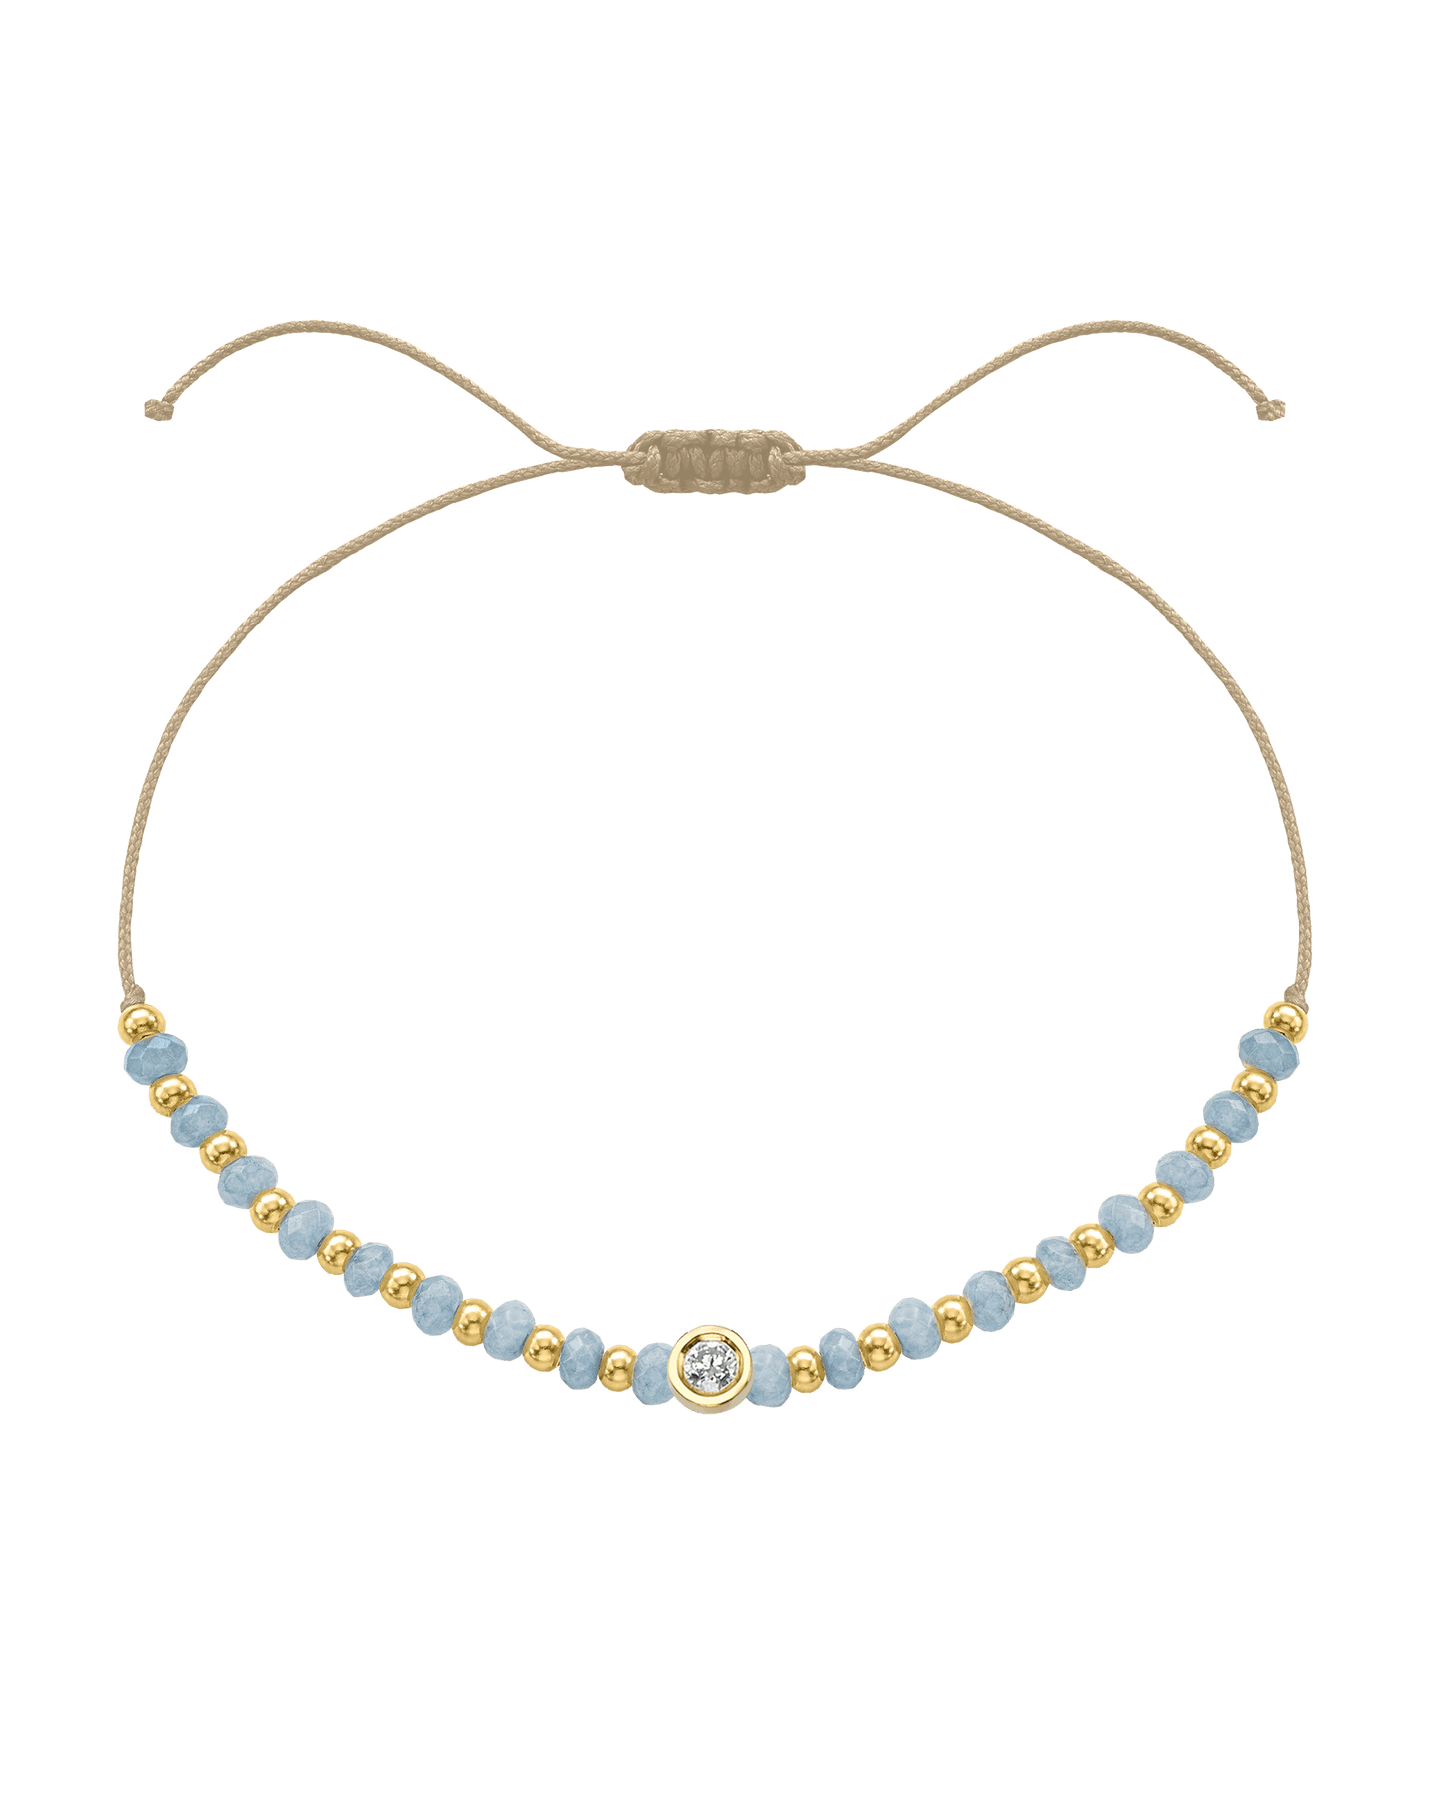 Celestite Gemstone String of Love Bracelet for Mindfulness - 14K Yellow Gold Bracelets 14K Solid Gold Beige Medium: 0.04ct 